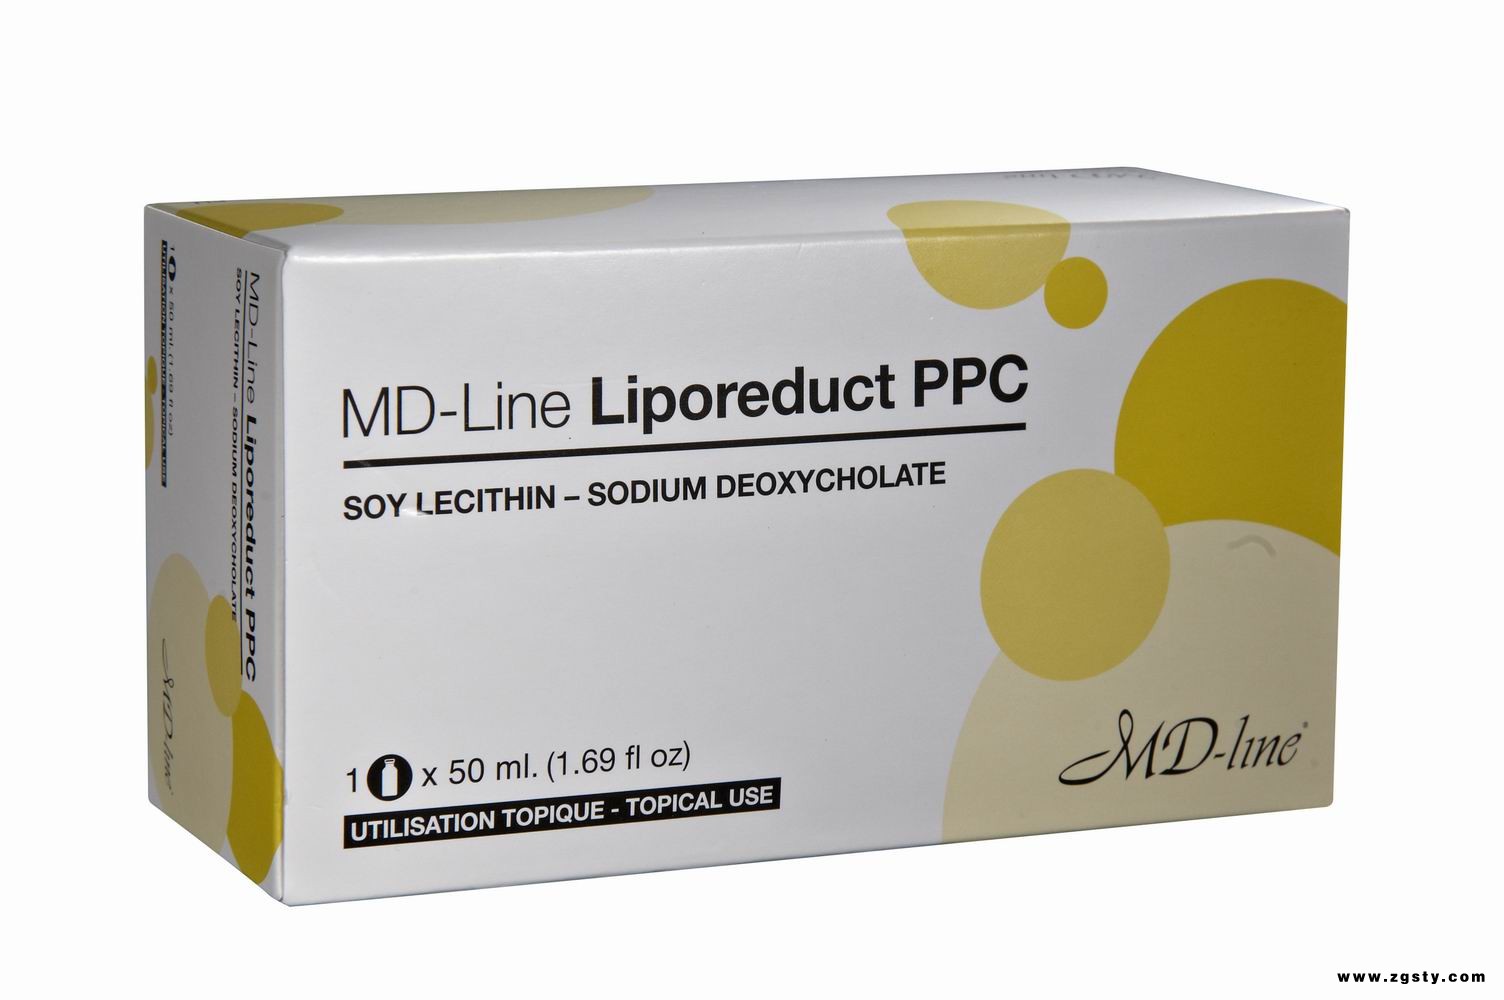 打减肥针溶脂针法国PPC(Liporeduct PPC)